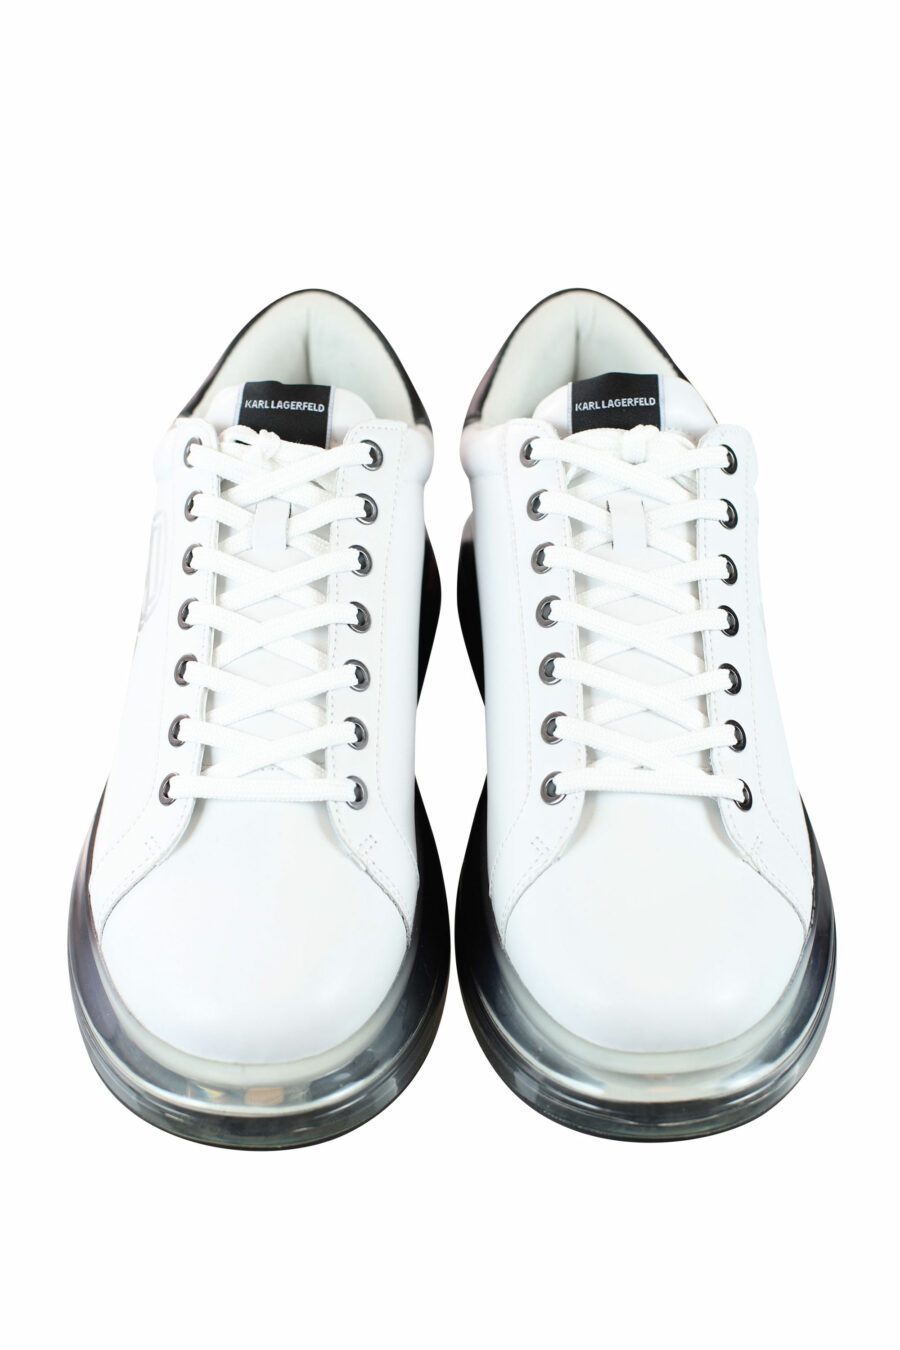 Zapatillas blancas con suela negra y logo degrade gris en silueta - IMG 0005